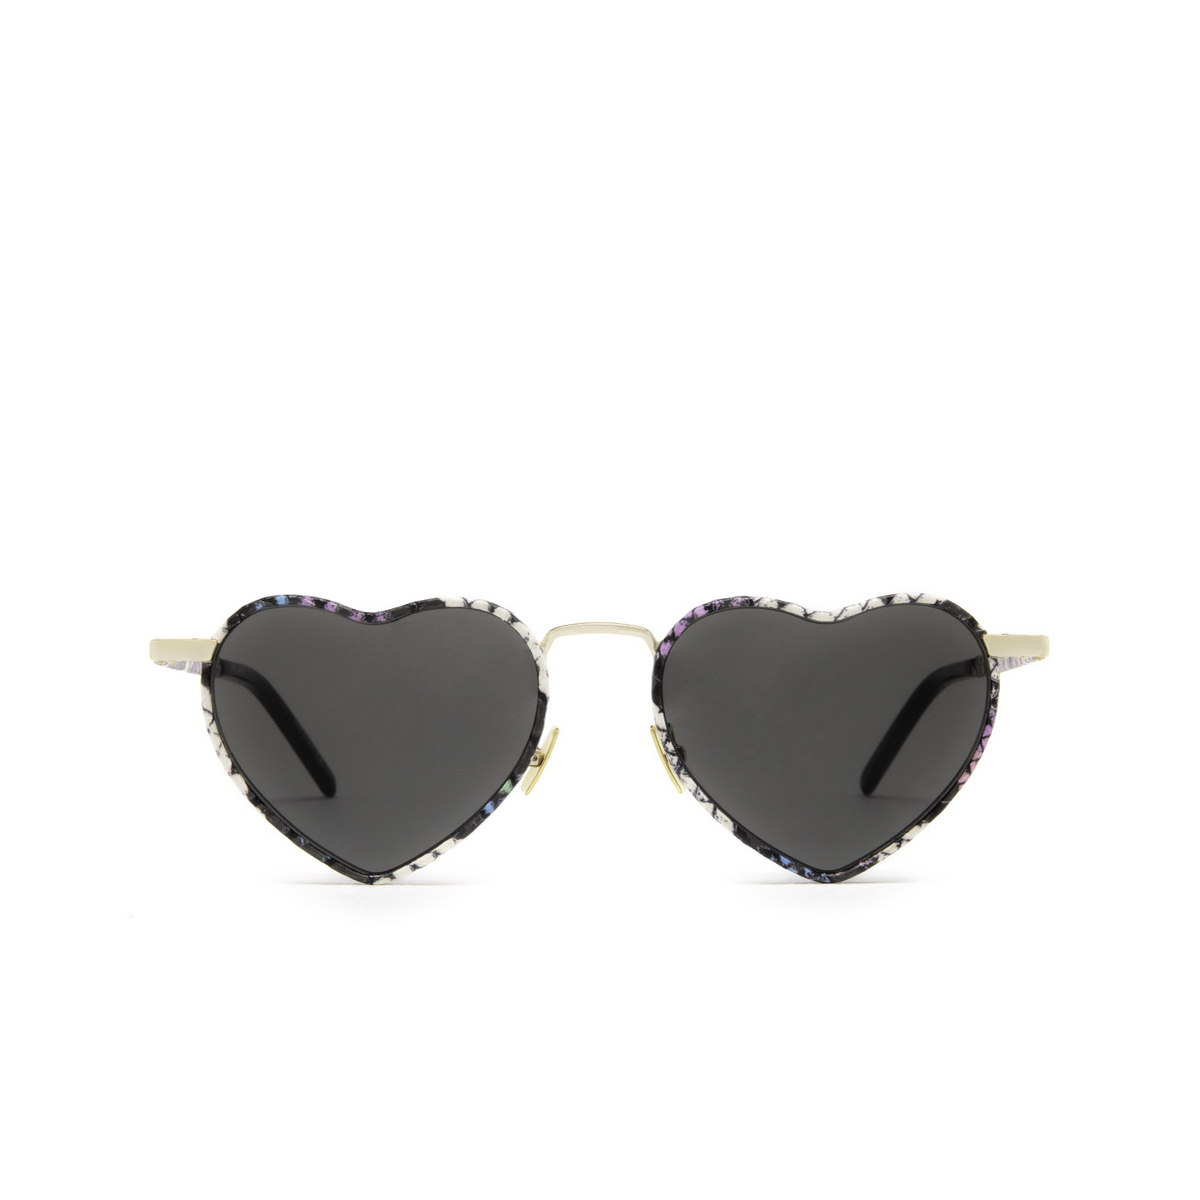 Saint Laurent® Irregular Sunglasses: SL 301 color Gold & Multicolor 010 - front view.